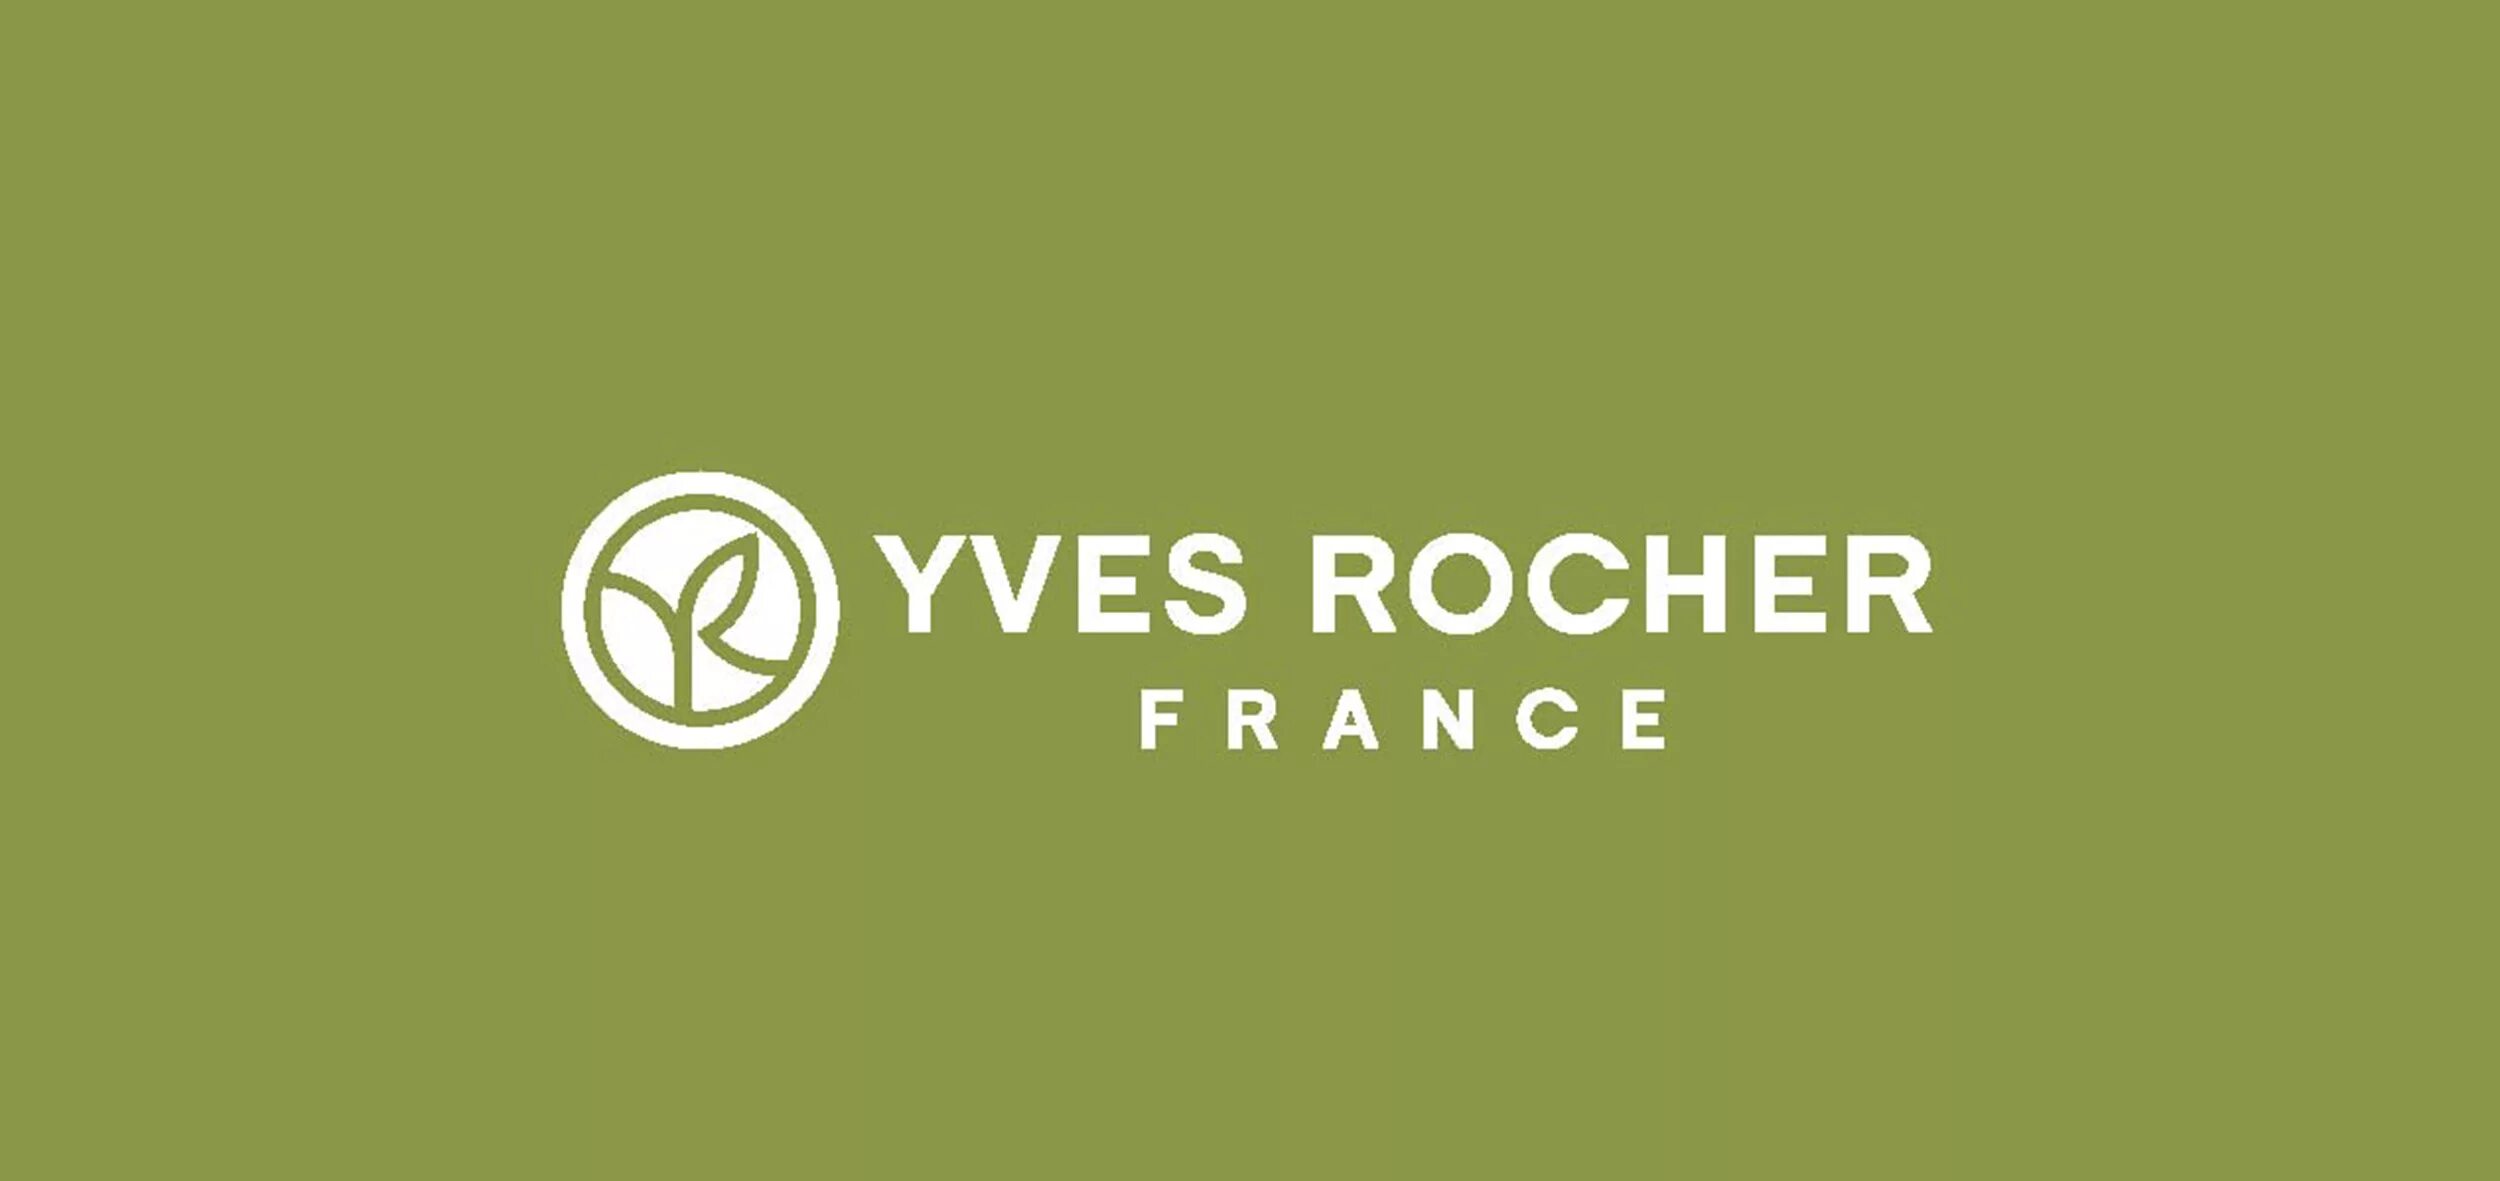 Ив роше киров. Ив Роше лого. Yves Rocher логотип. Yves Rocher картинки. Yves Rocher France логотип.